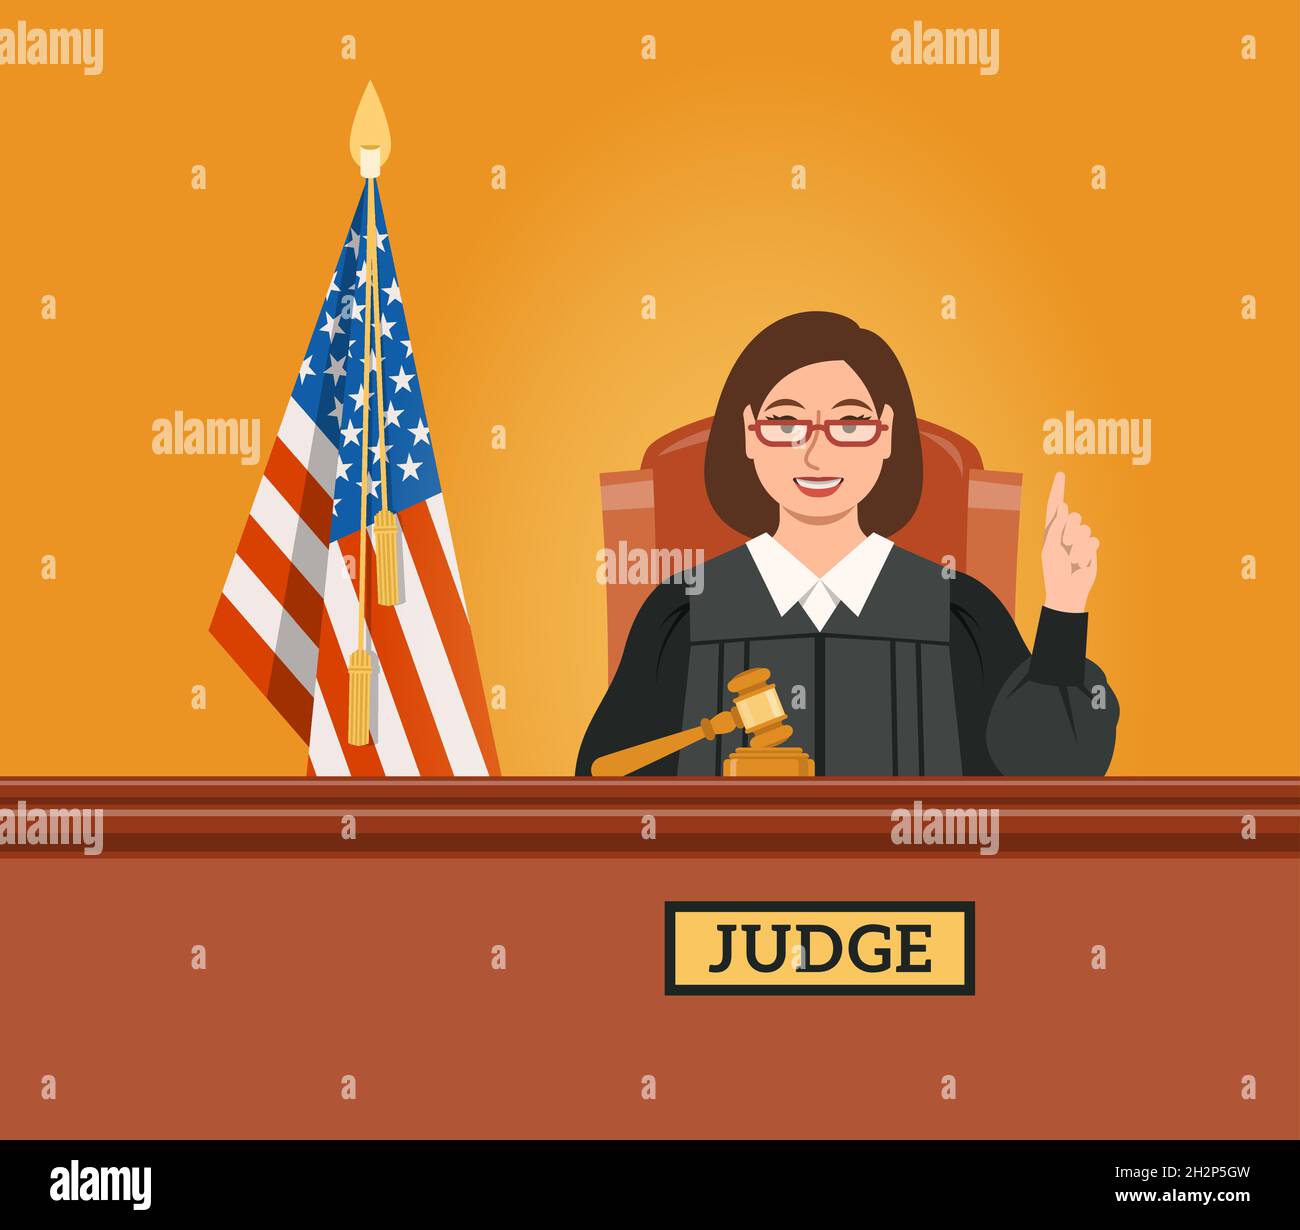 Richterin Frau im Gerichtssaal des Tribunals mit Gavel und amerikanischer Flagge zeigt den Finger nach oben und spricht ein Urteil. Judicial Cartoon Hintergrund. Zivil und Krimin Stock Vektor